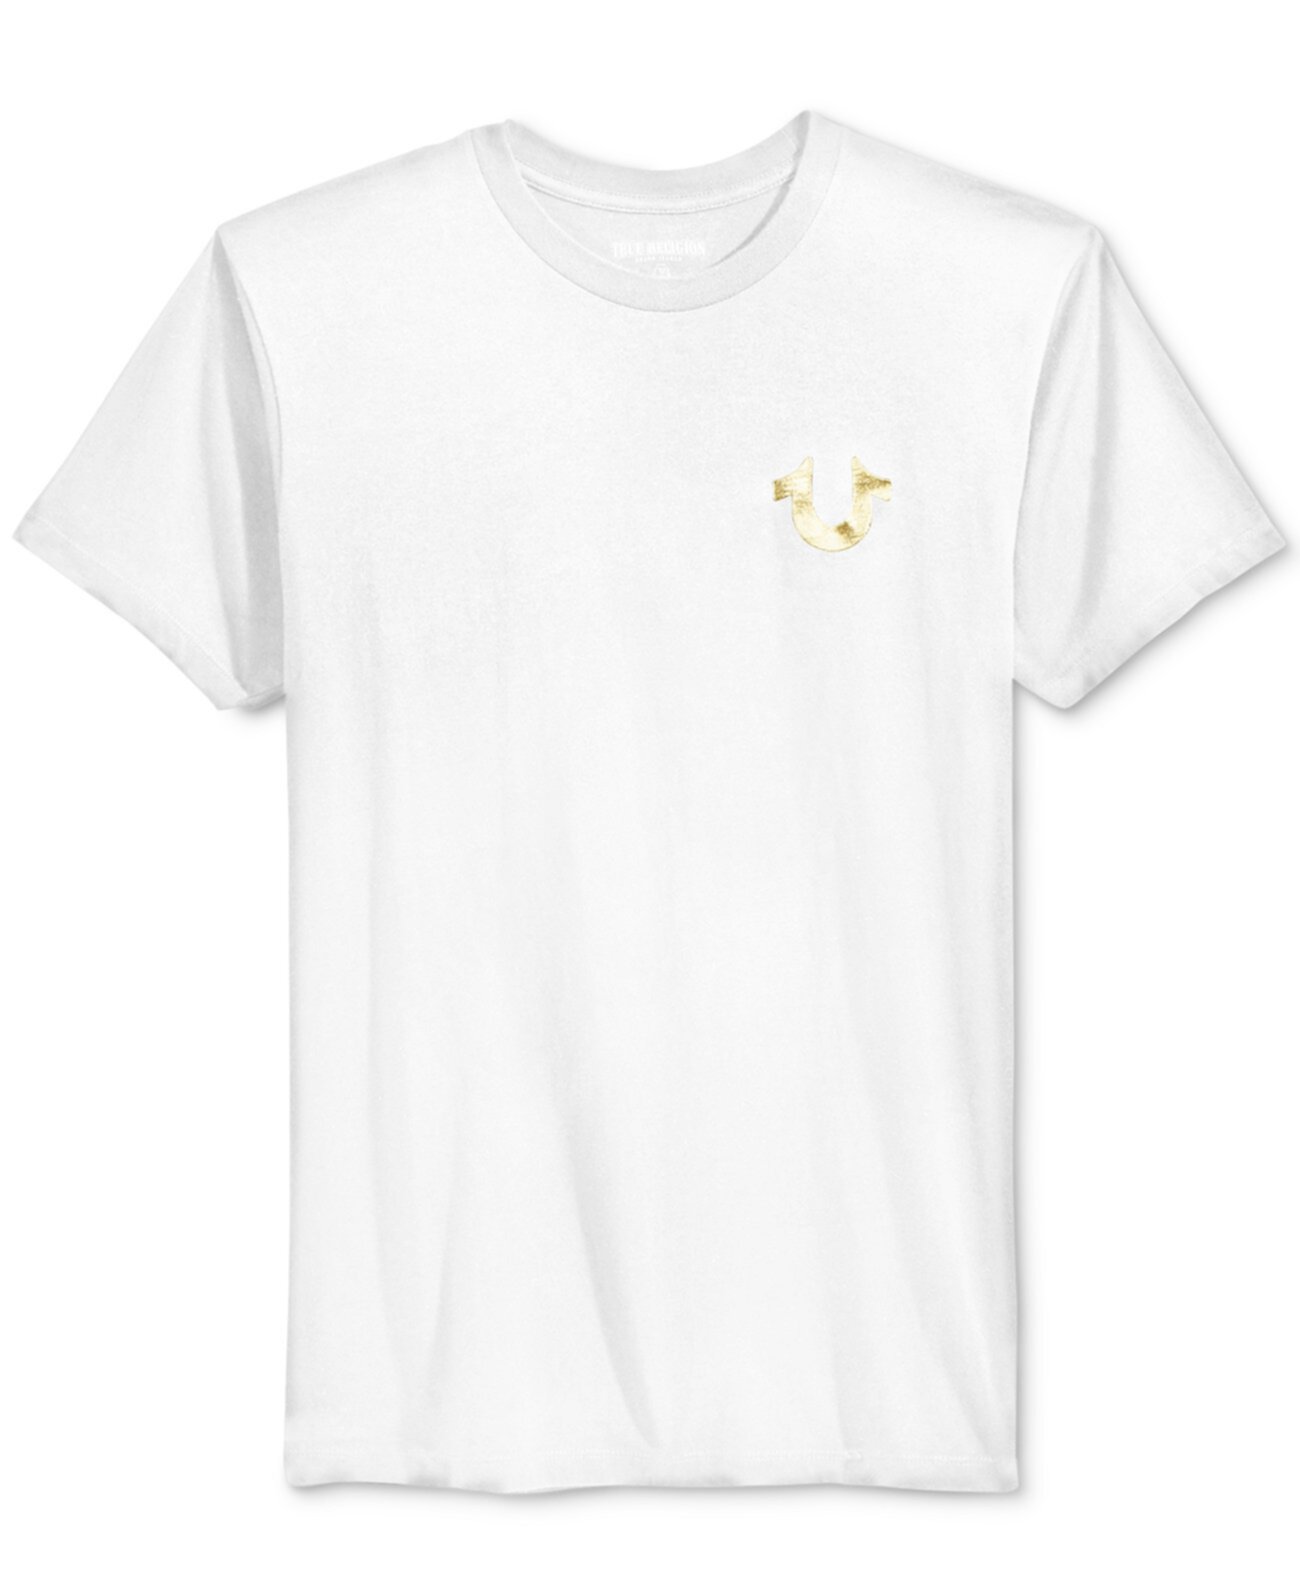 Мужская футболка с принтом и металлическим логотипом True Religion